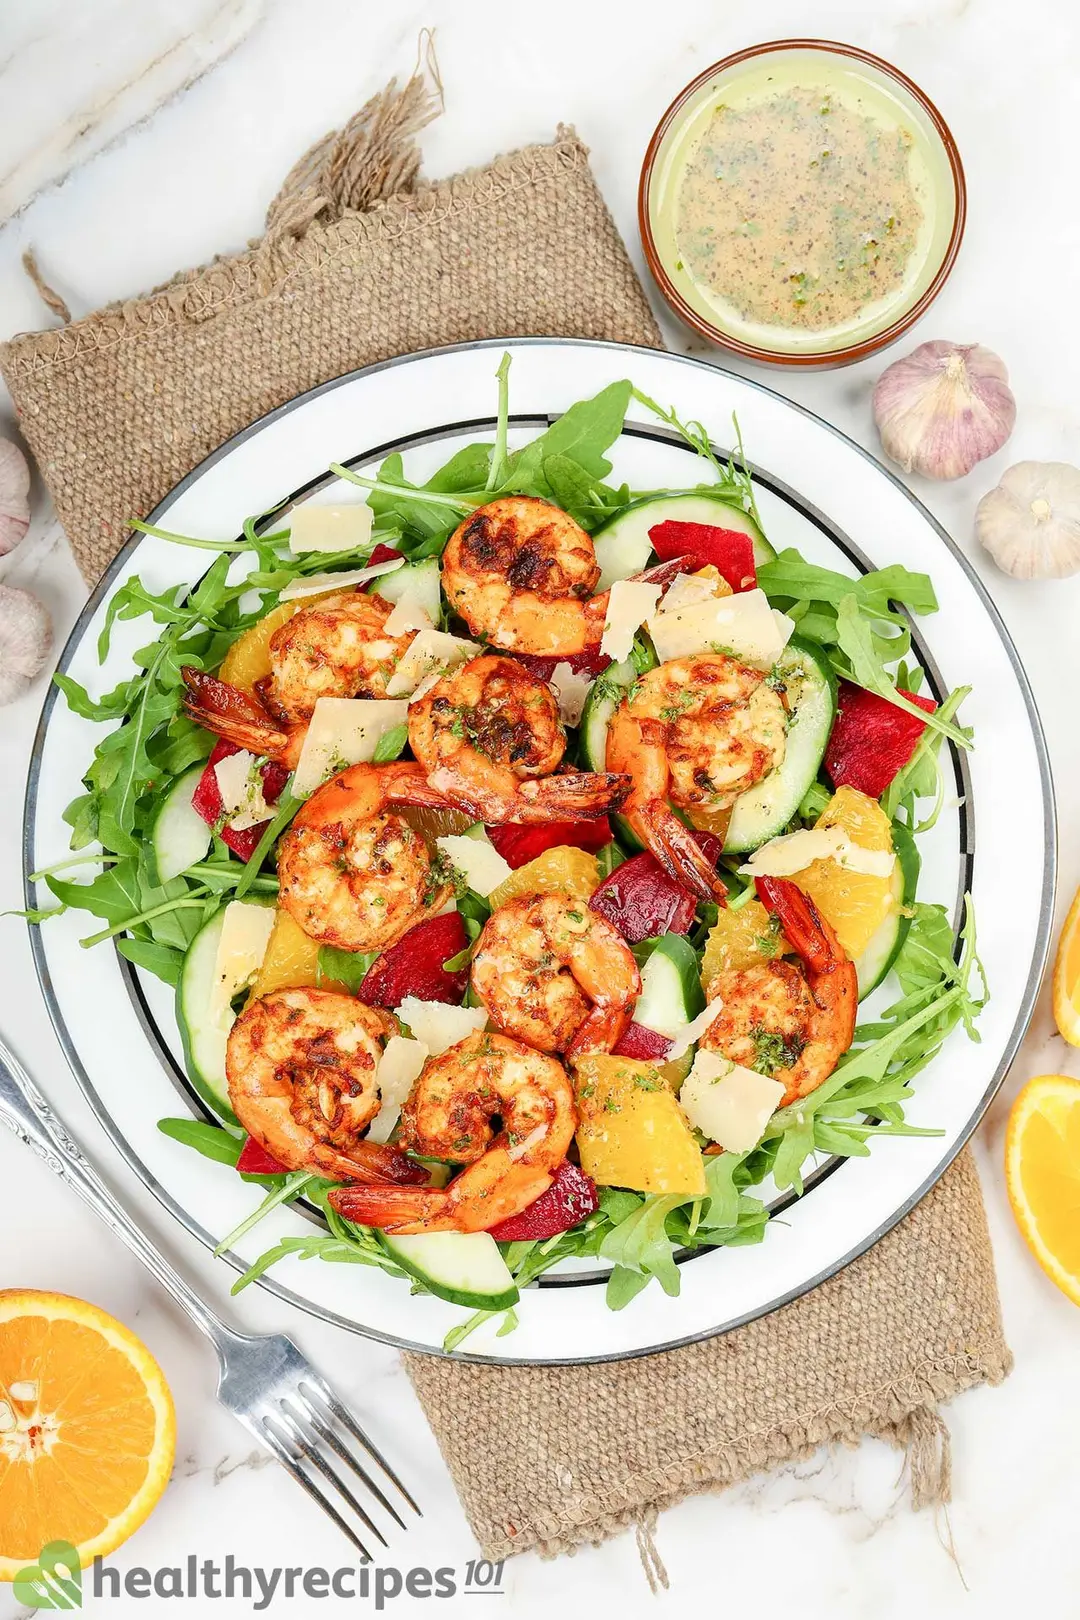 Shrimp Salad Recipes